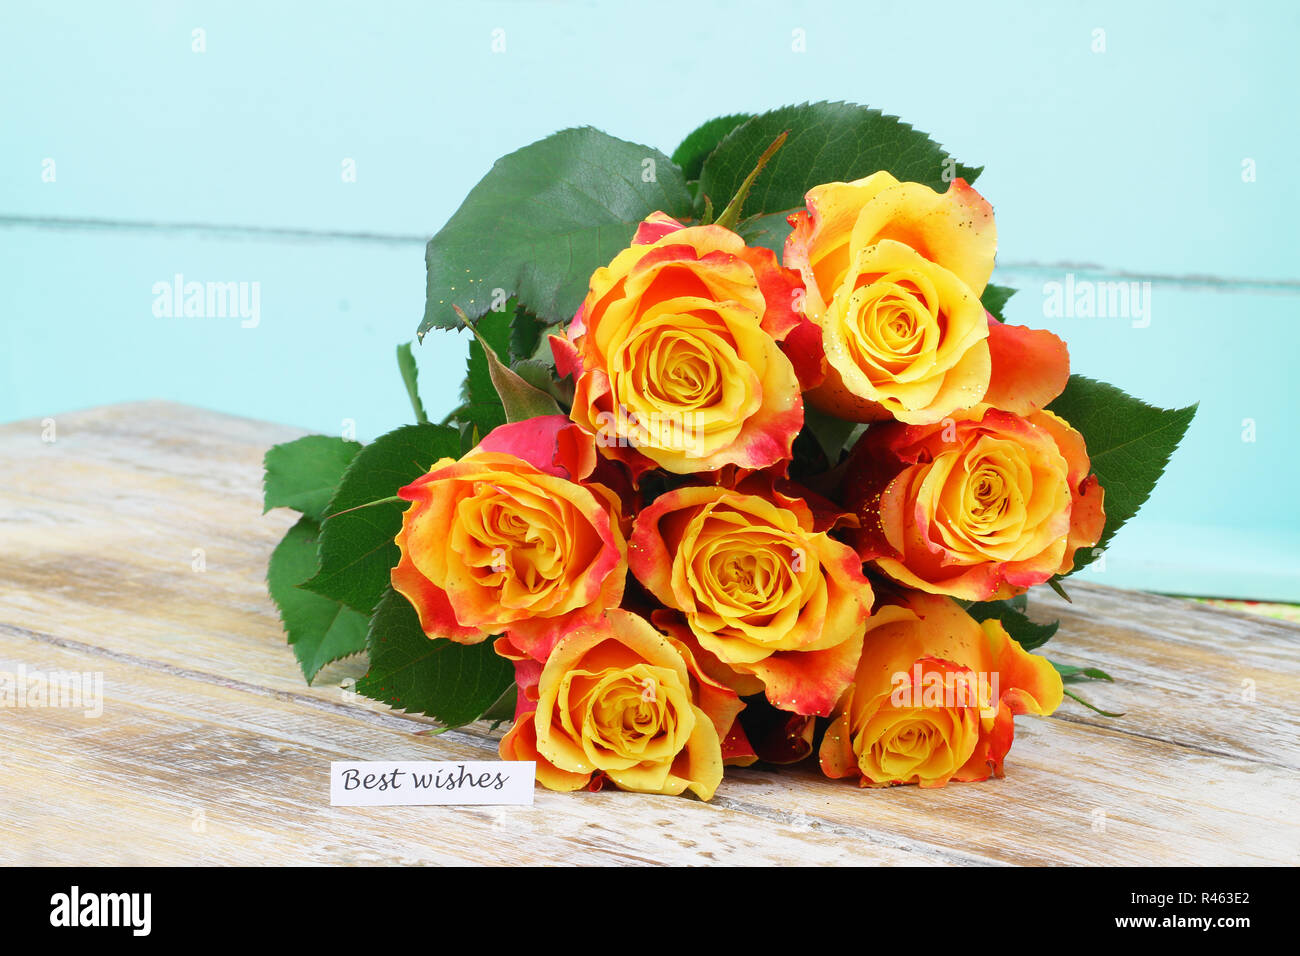 Beste Wünsche Karte mit bunten Rose Bouquet auf Holzmöbeln im Landhausstil Oberfläche Stockfoto